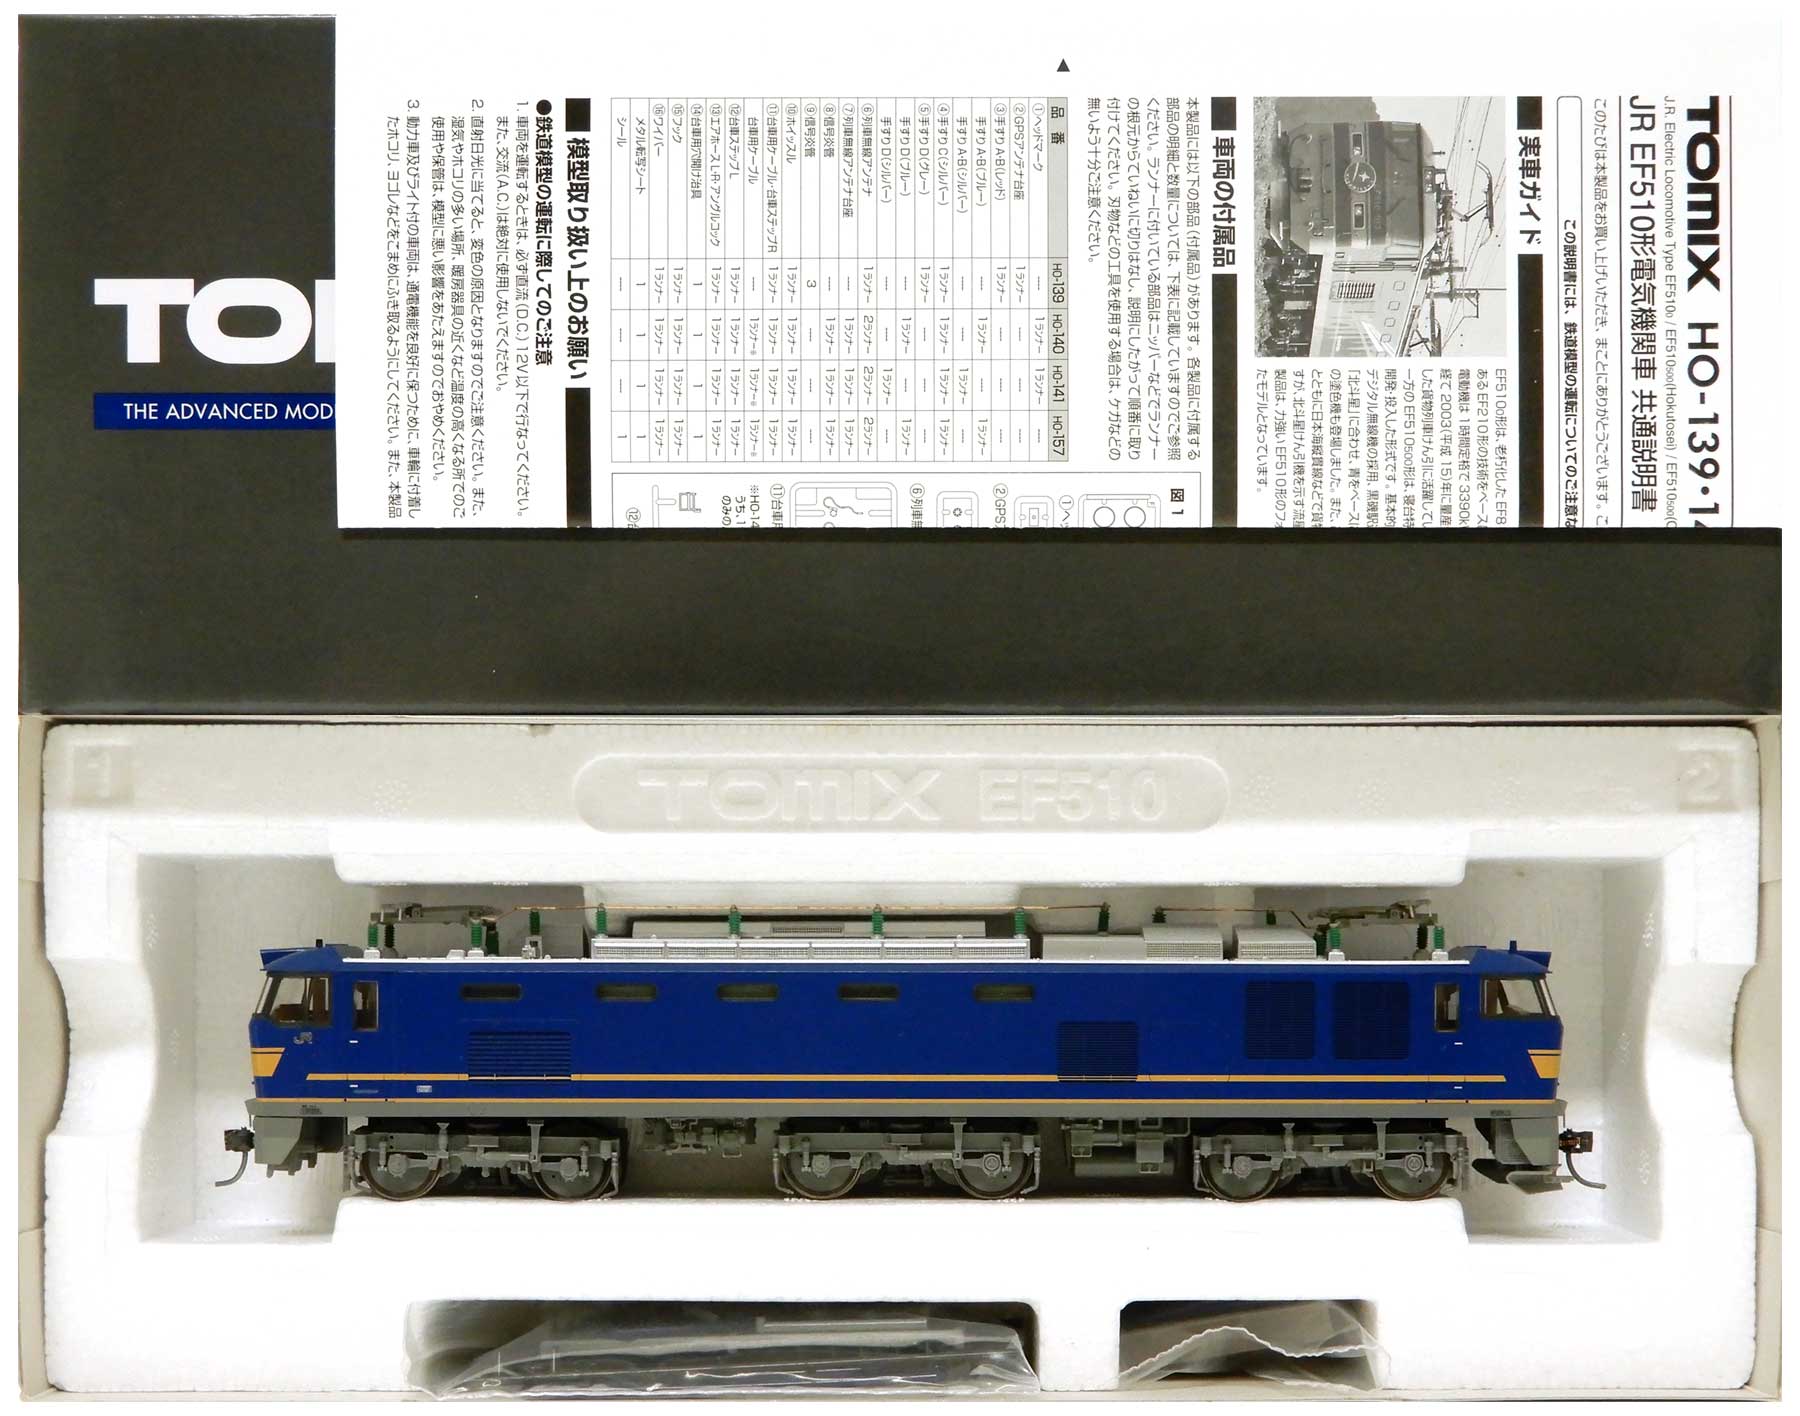 公式]鉄道模型(HO-157JR EF510-500形電気機関車 (JR貨物仕様))商品詳細 